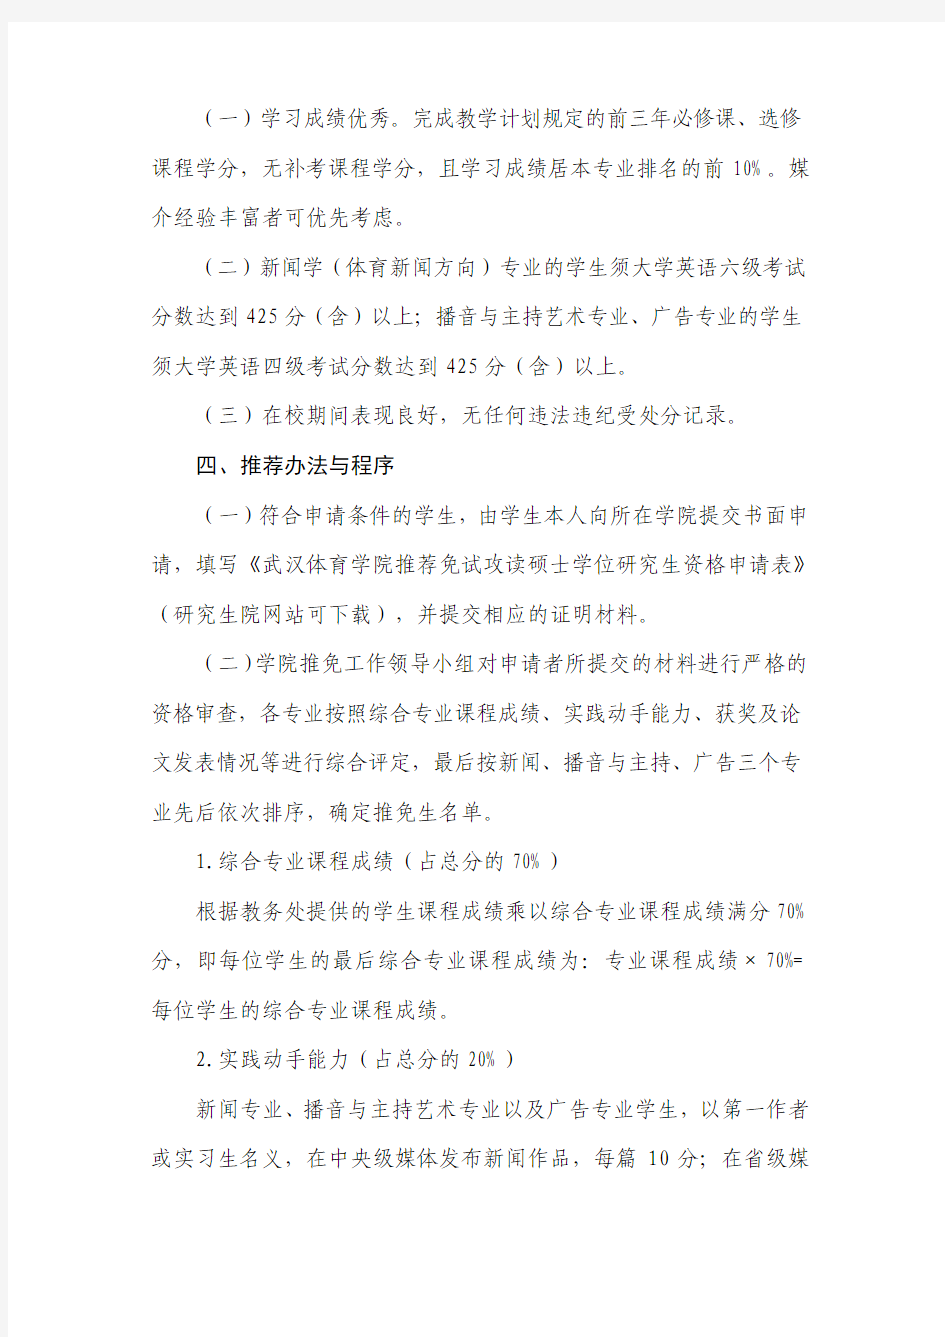 武汉体育学院新闻传播学院2014年推荐优秀本科毕业生免试攻读硕士研究生的实施细则